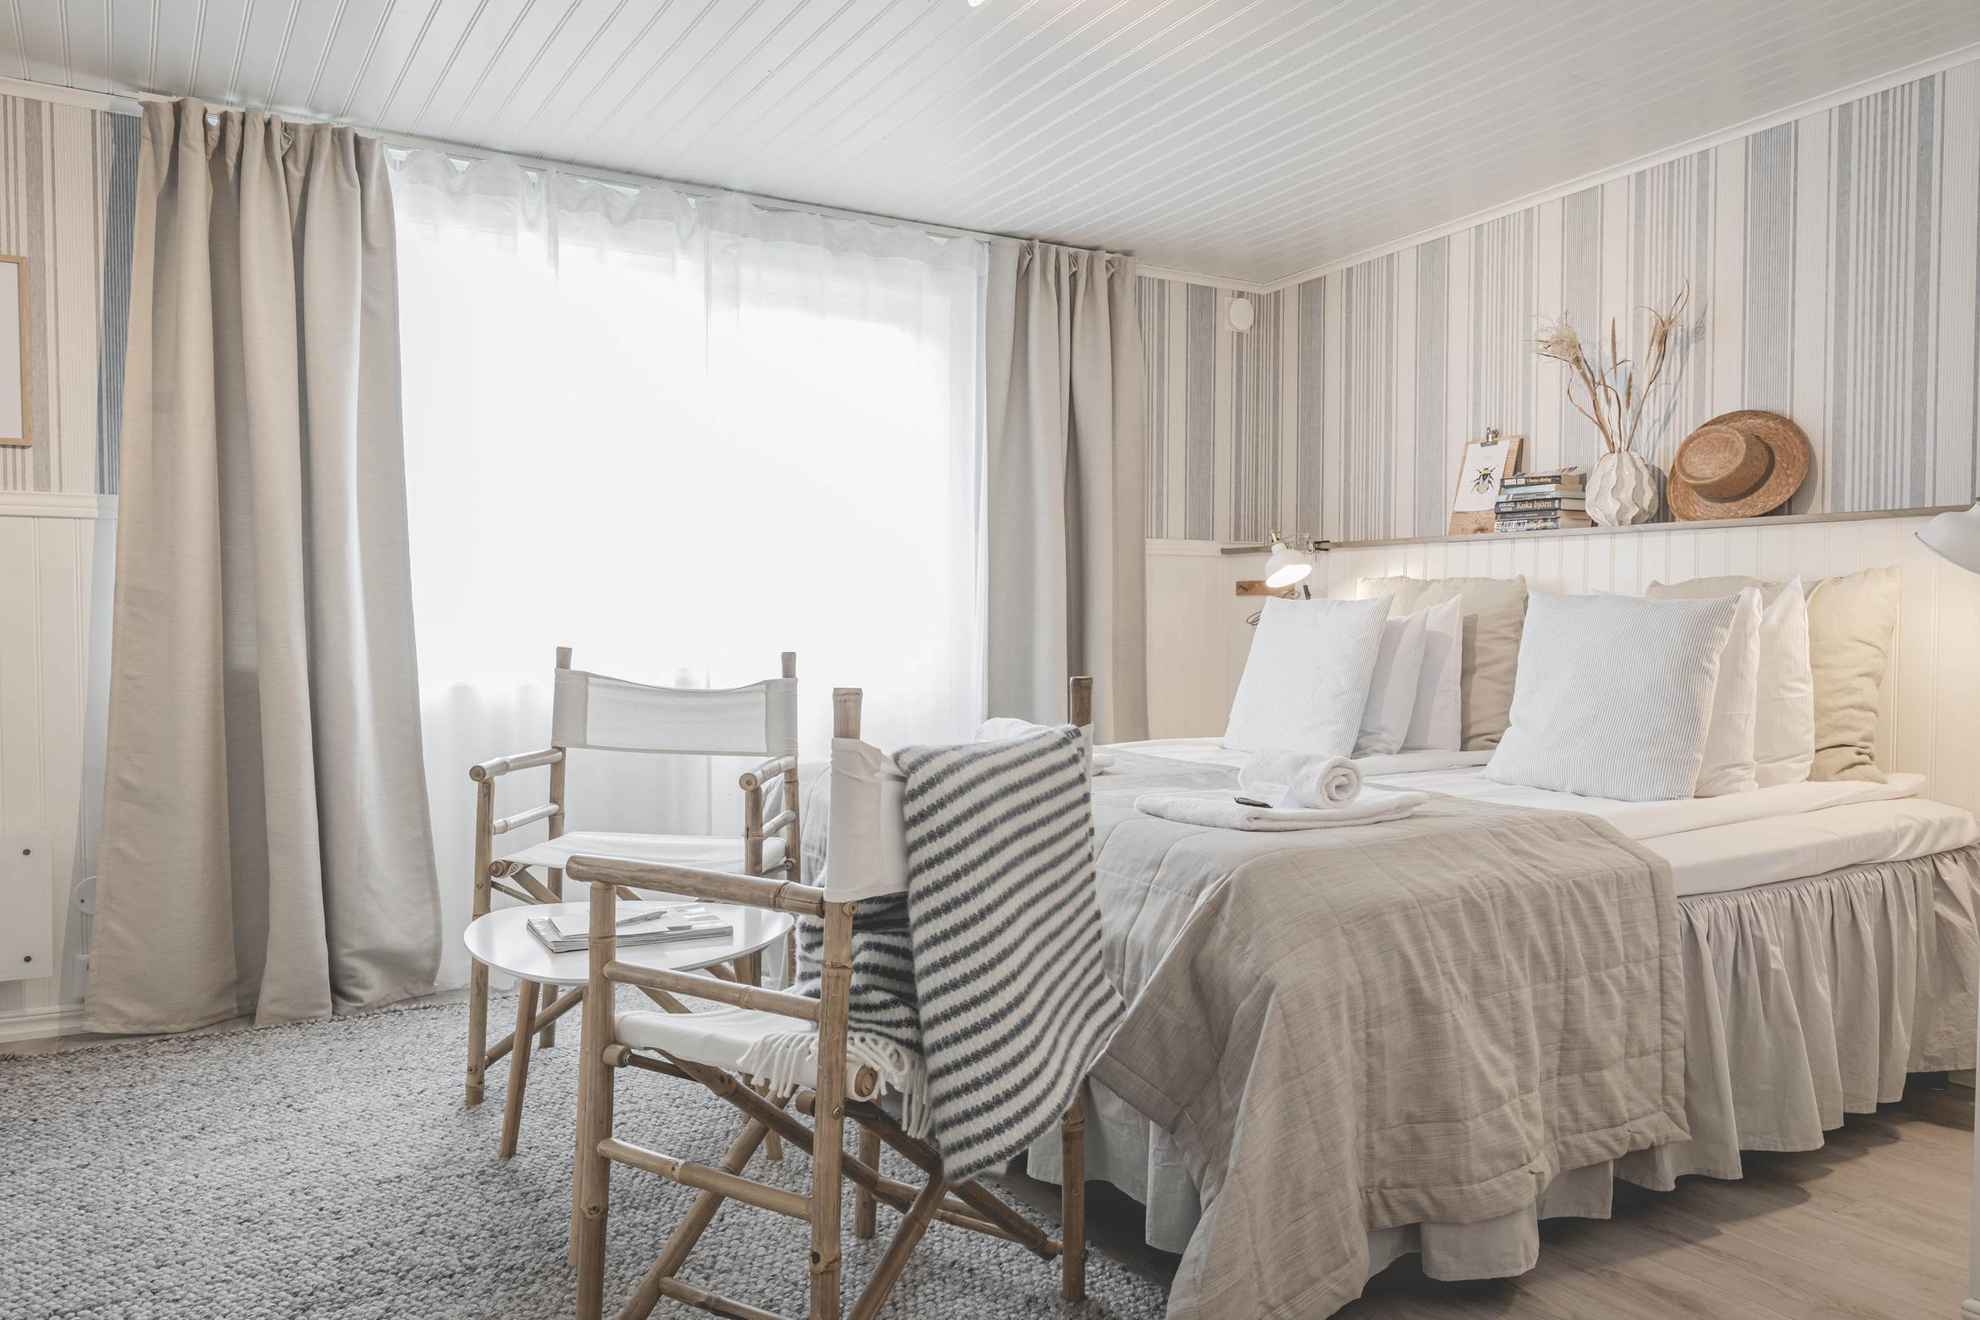 Une chaöbre d'hôtel de StrandNära. Le chambre dispose d'un grand lit et est décorée en blanc et beige.